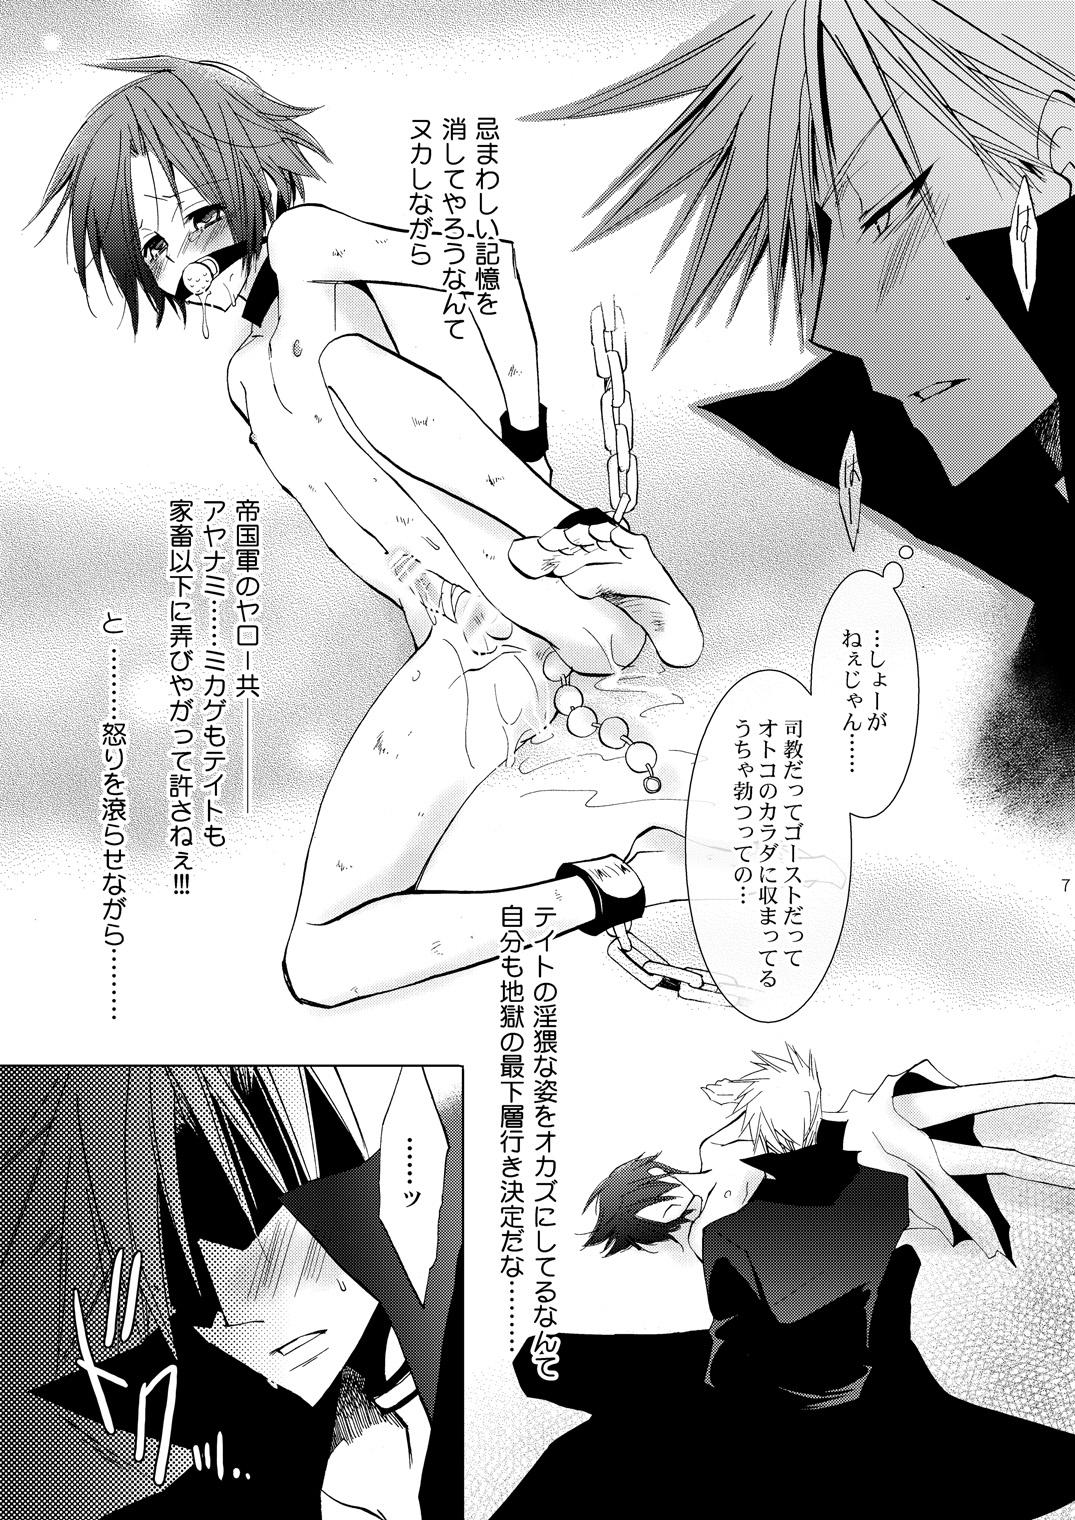 Women Sucking Dicks Hikatokage wa futatsu de hitotsu - 07 ghost Wam - Page 6